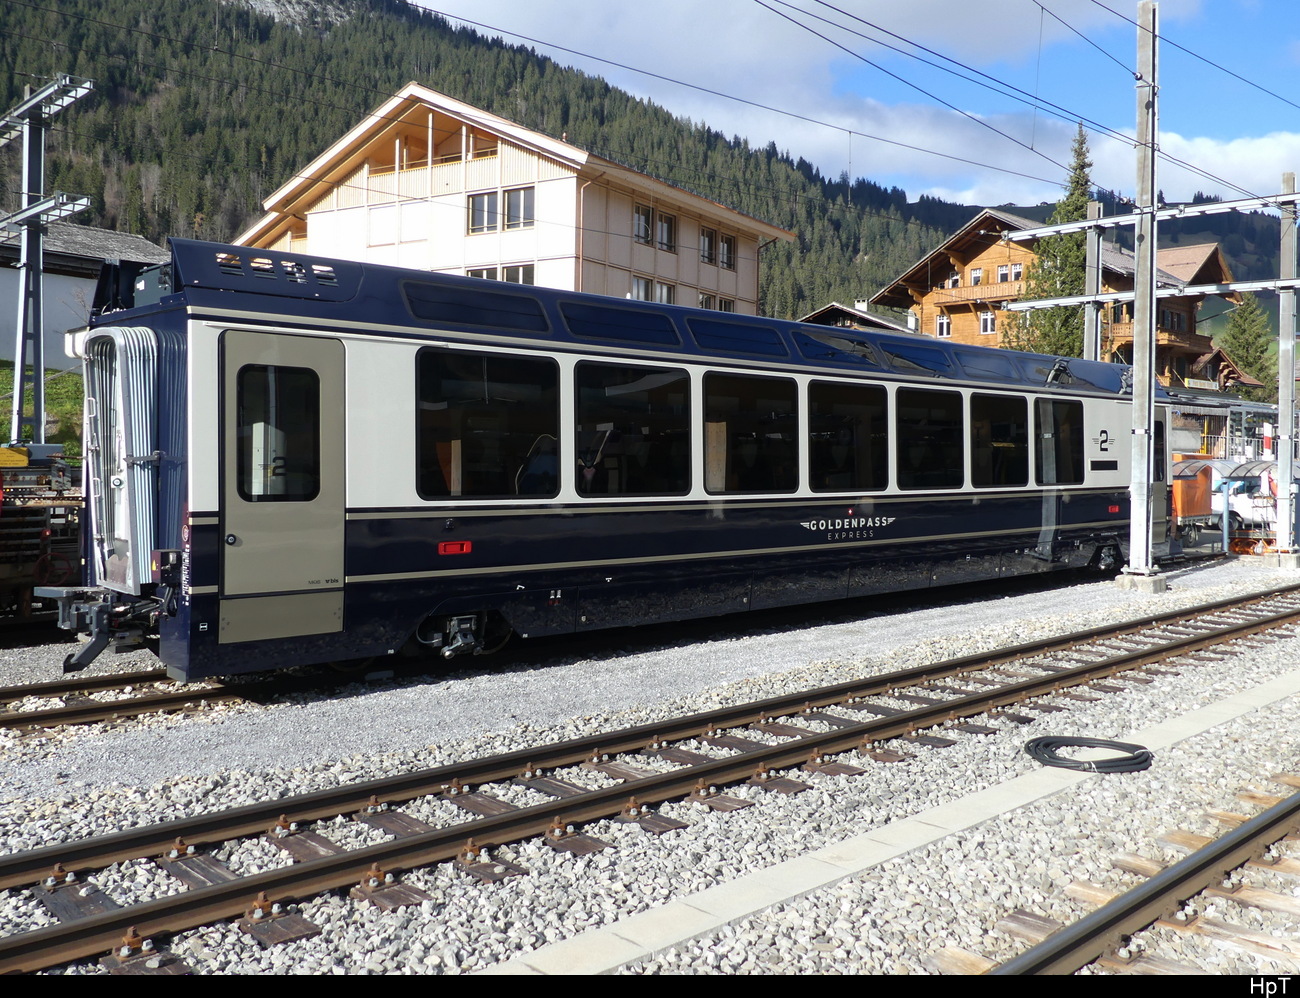 MOB / Goldenpass - Spurwechsel 2 Kl. Personenwagen Bs 96 85 8300 284-3 abgestellt im Zweisimmen am 20.11.2022